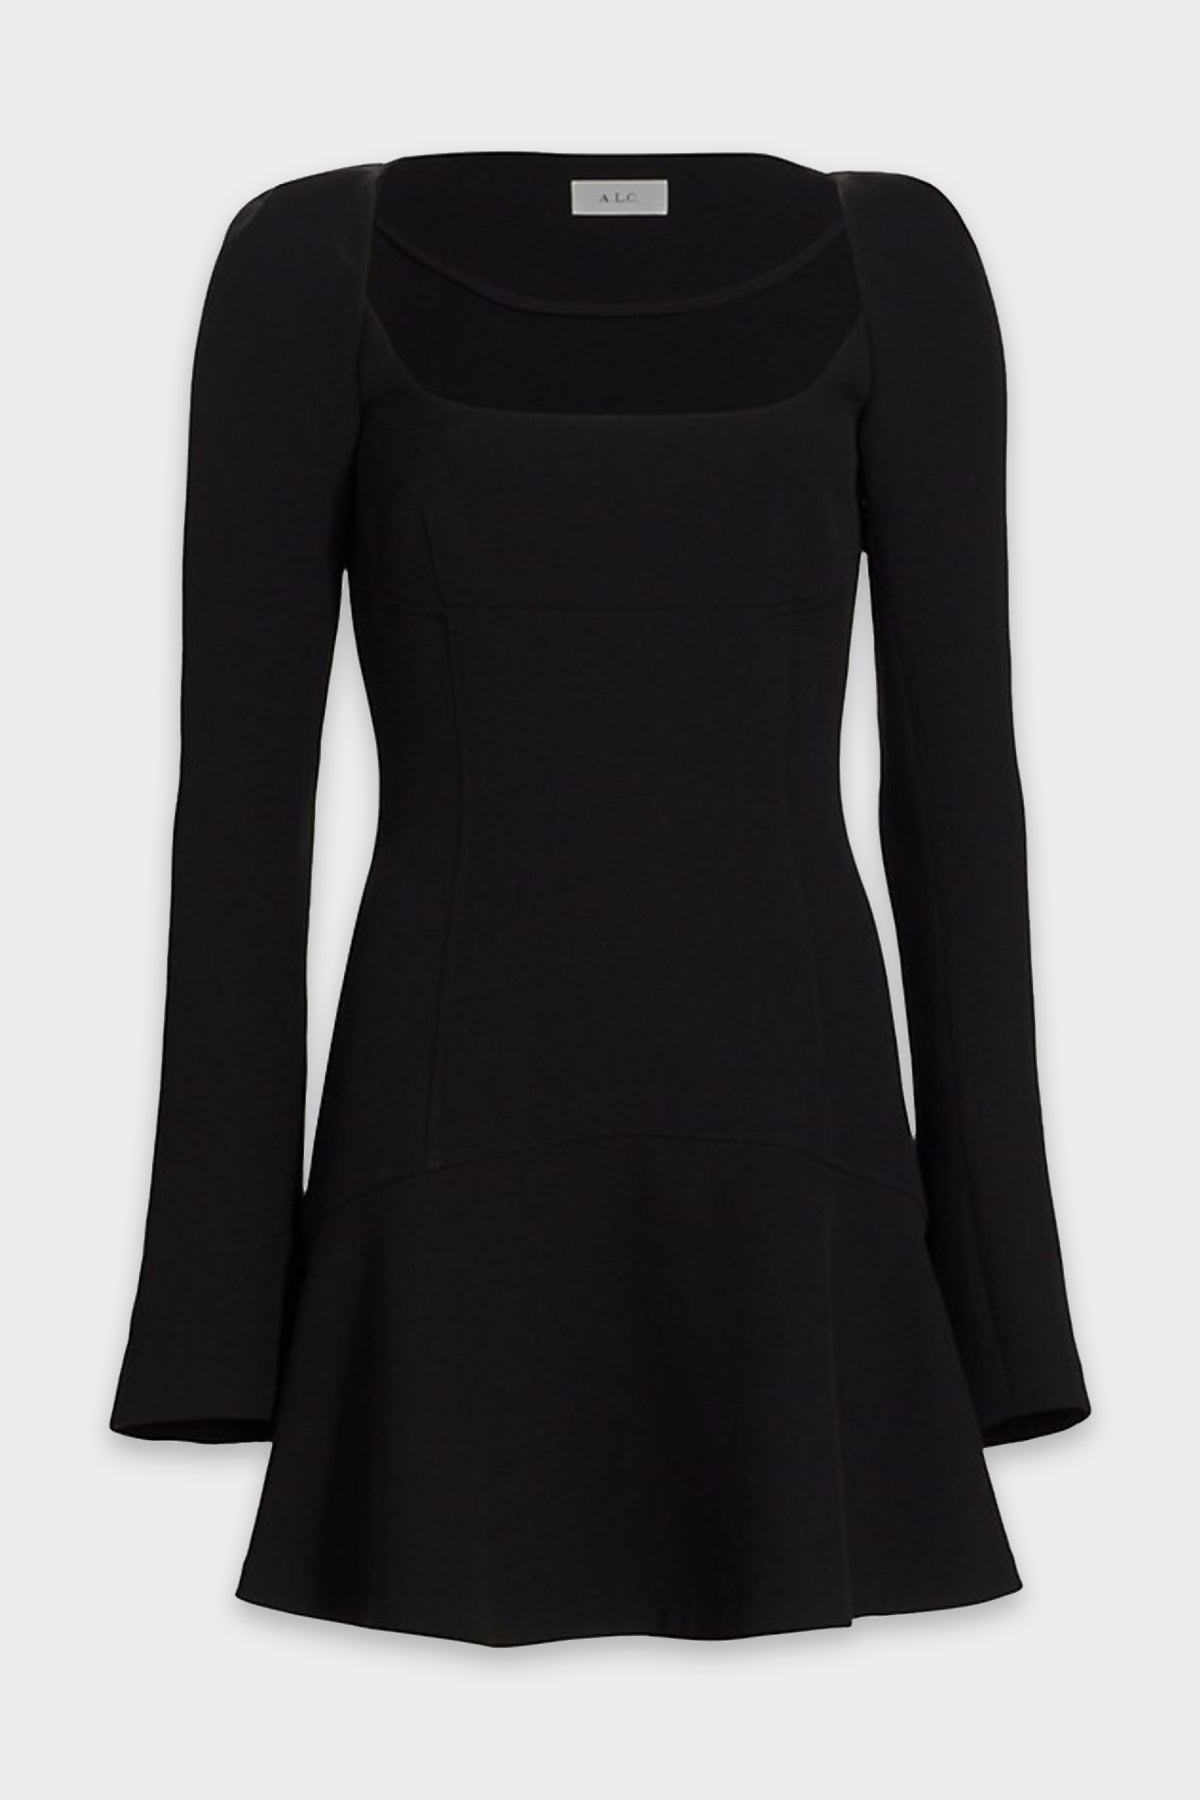 Heidi Mini Dress in Black